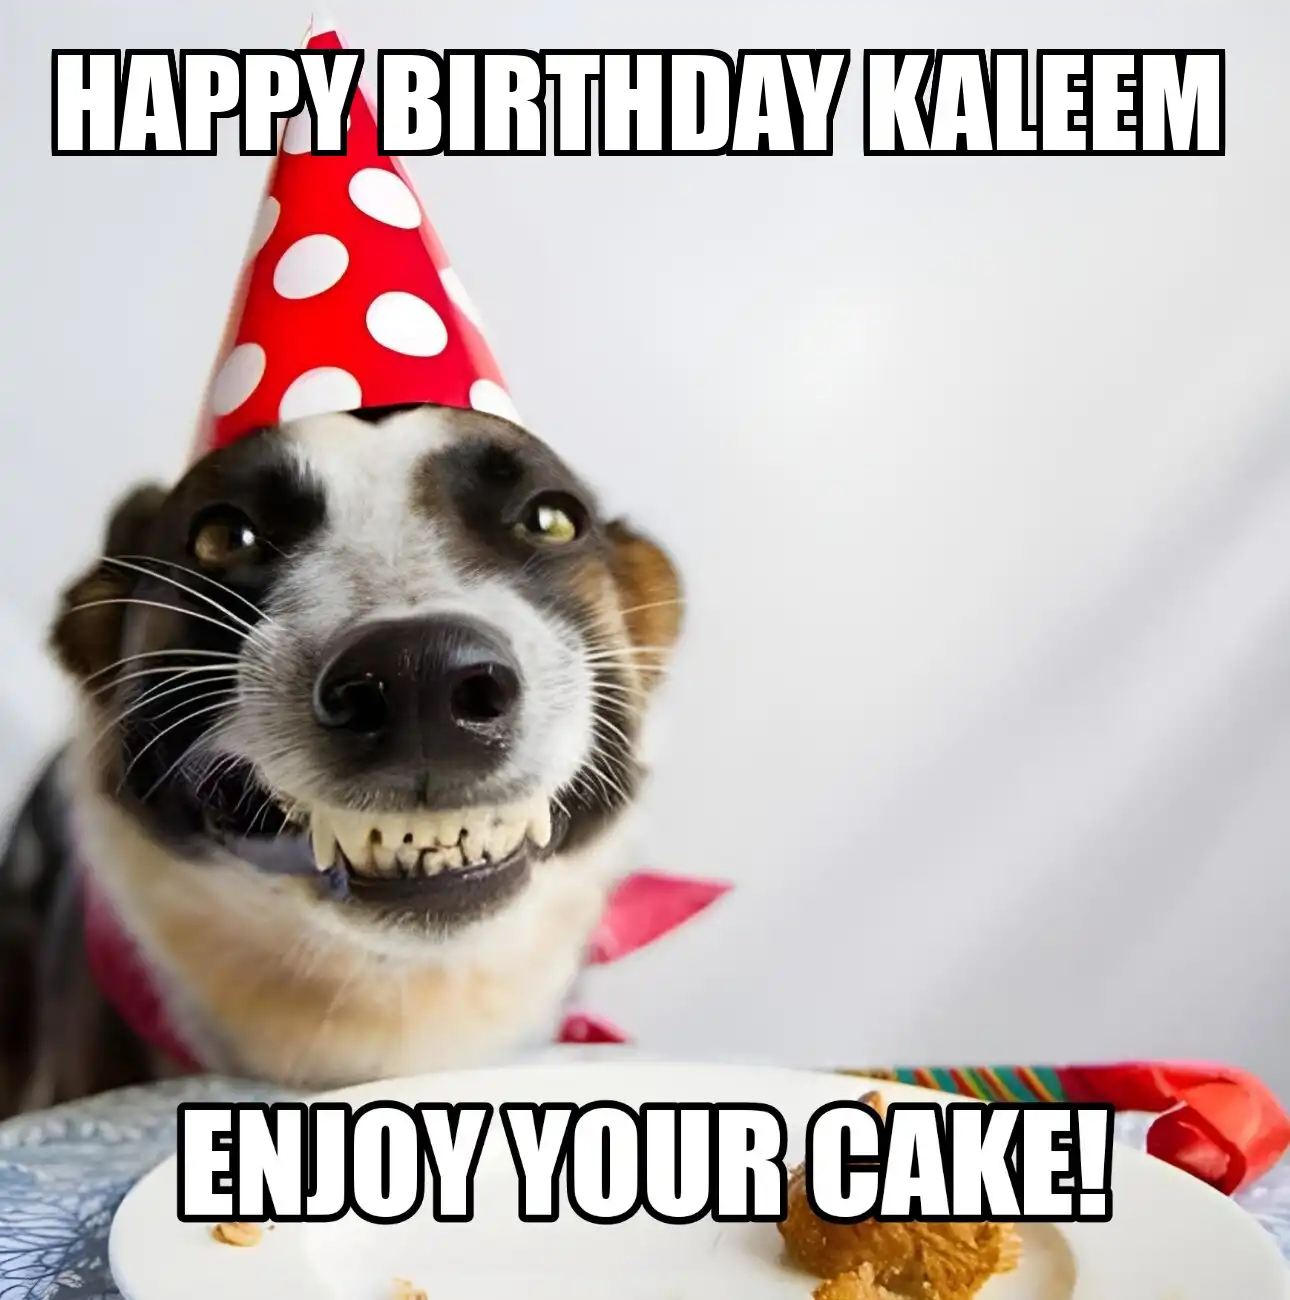 Happy Birthday Kaleem Enjoy Your Cake Dog Meme